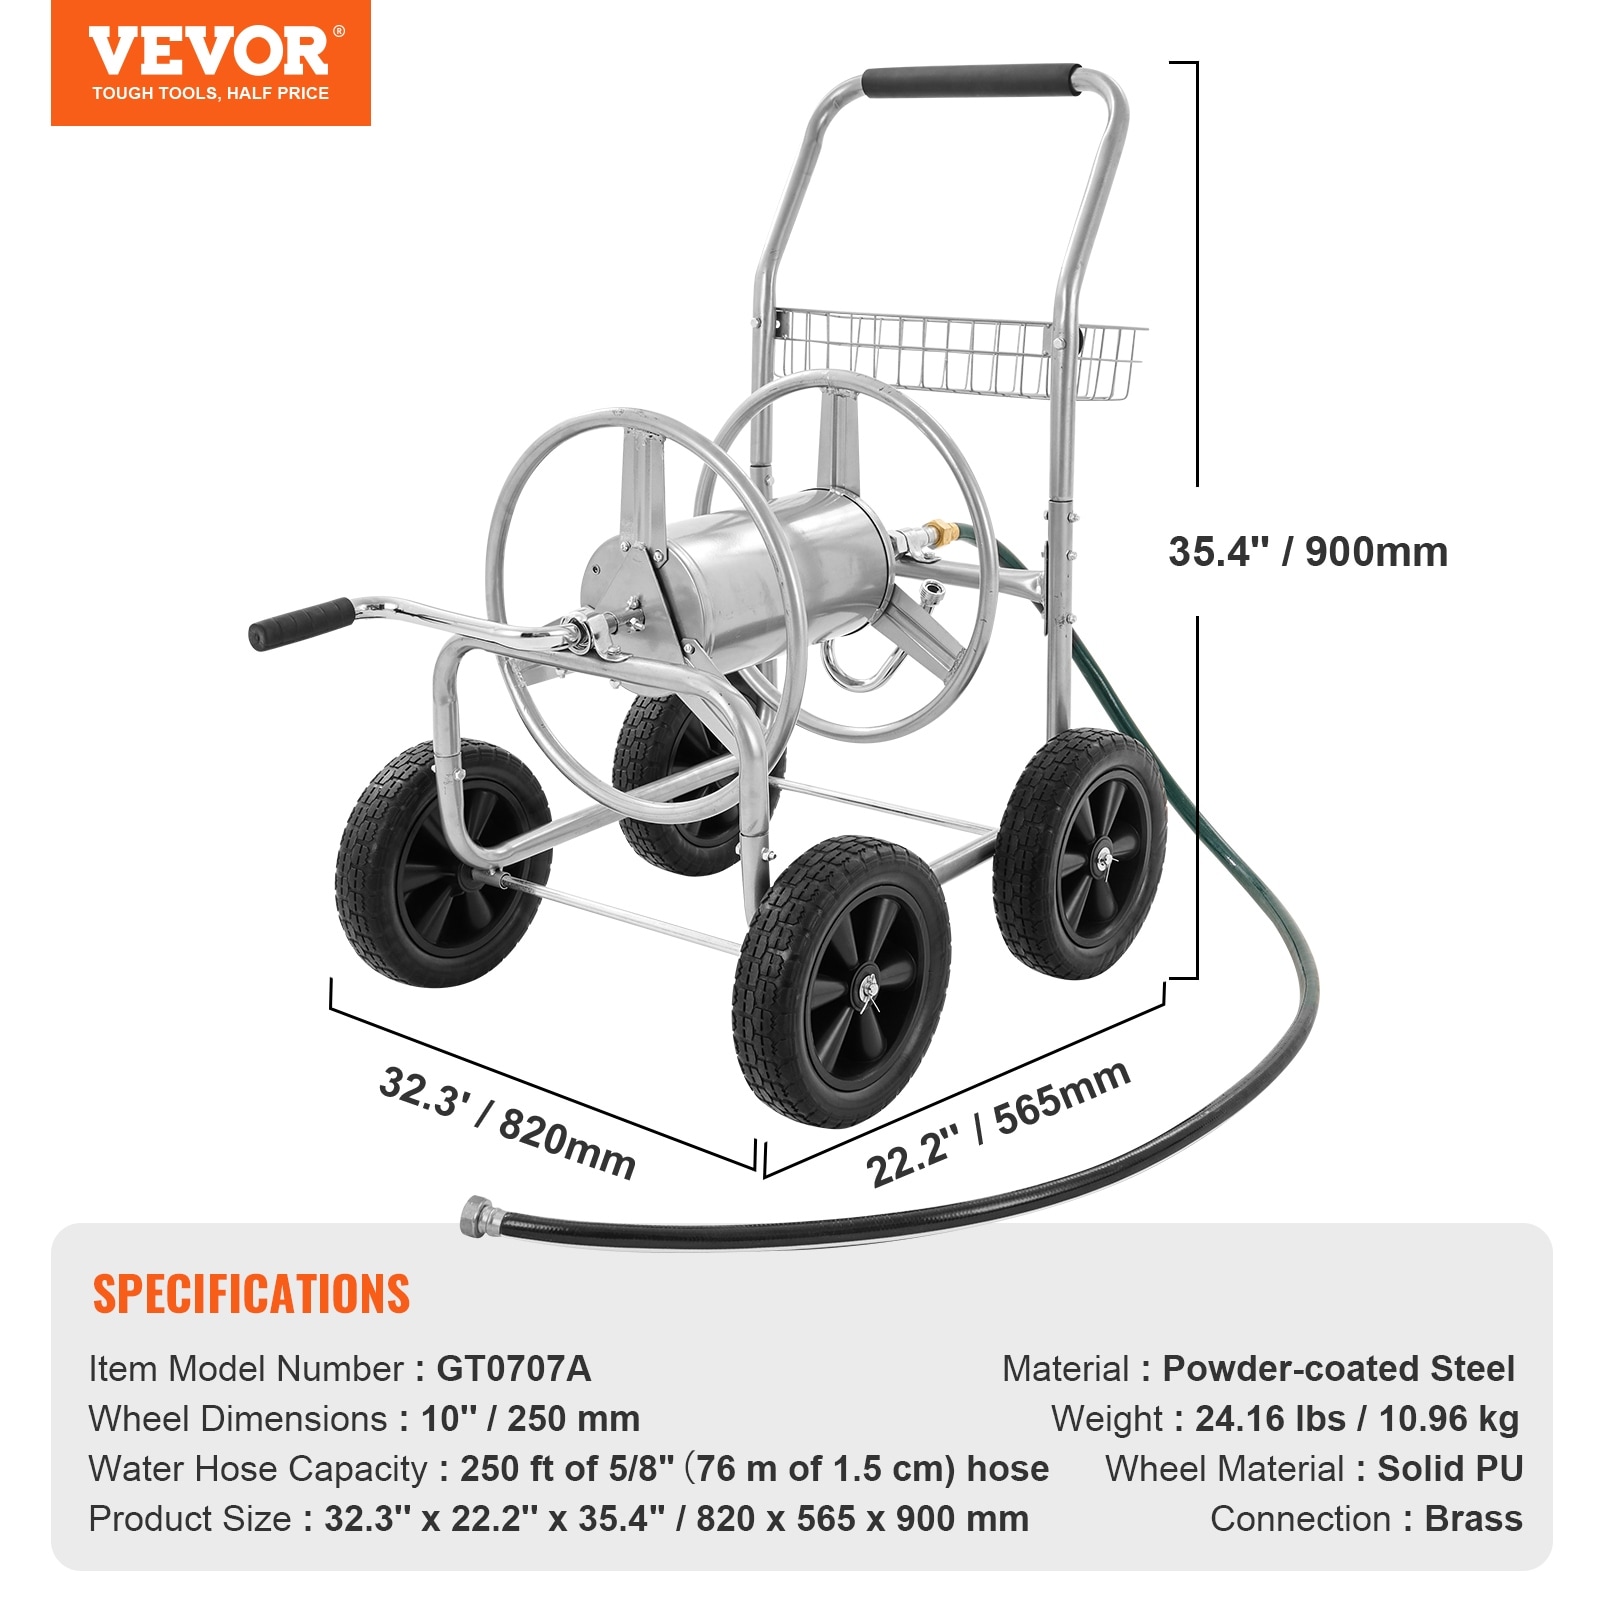 VEVOR Hose Reel Cart Hold Up to 175ft 200ft 250ft & 300ft of 5/8 Hose,  Garden Water Hose Carts Steel with Storage Basket - On Sale - Bed Bath &  Beyond - 38738283